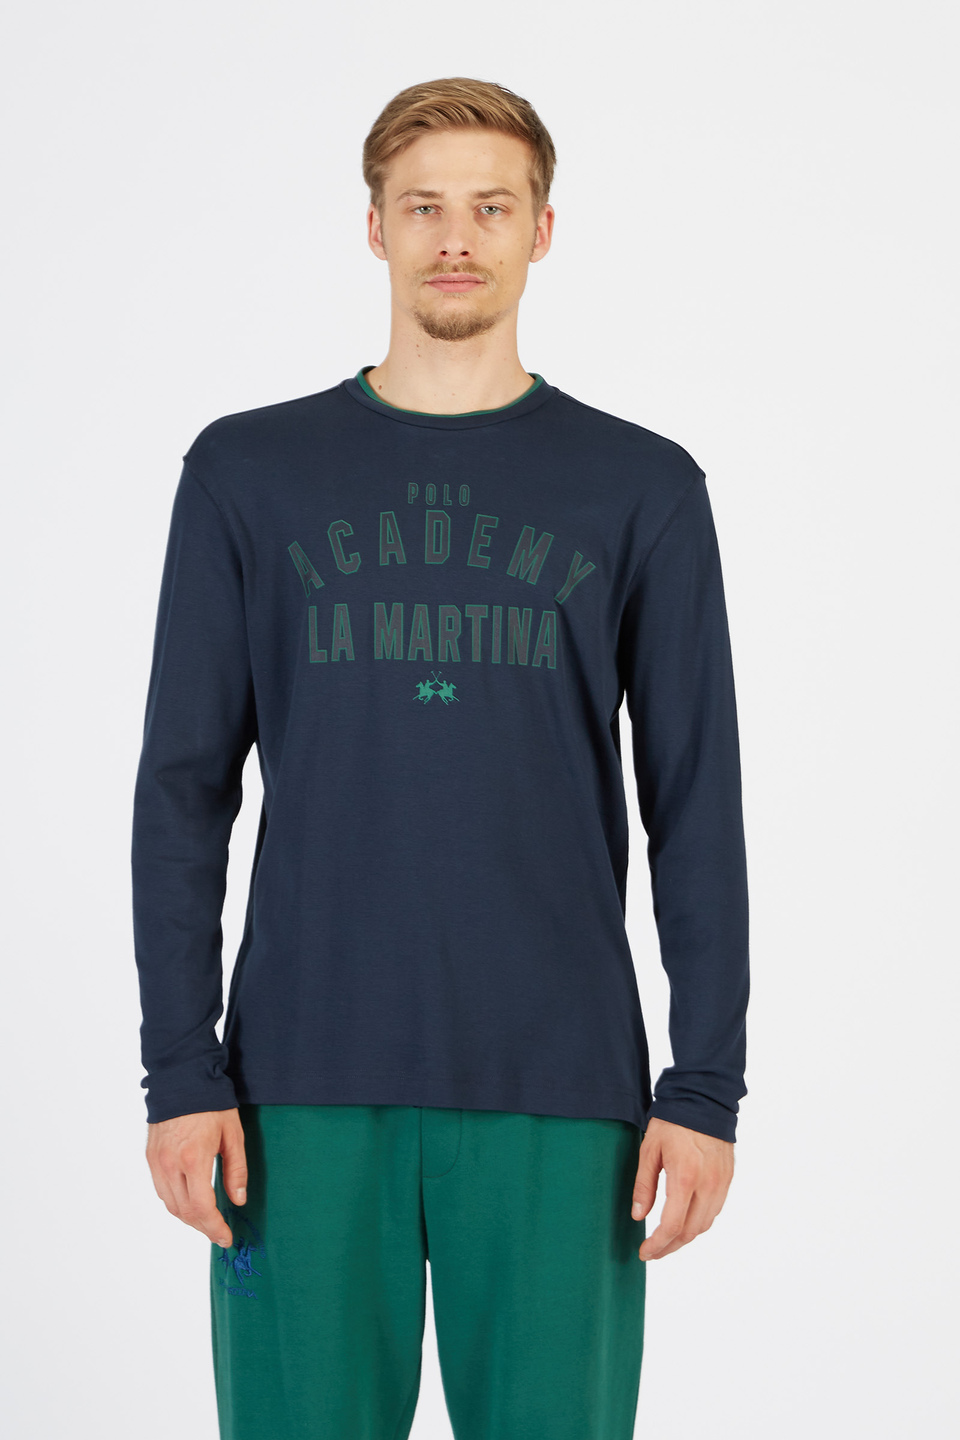 T-shirt homme à manches longues motif ras du cou coupe classique | La Martina - Official Online Shop